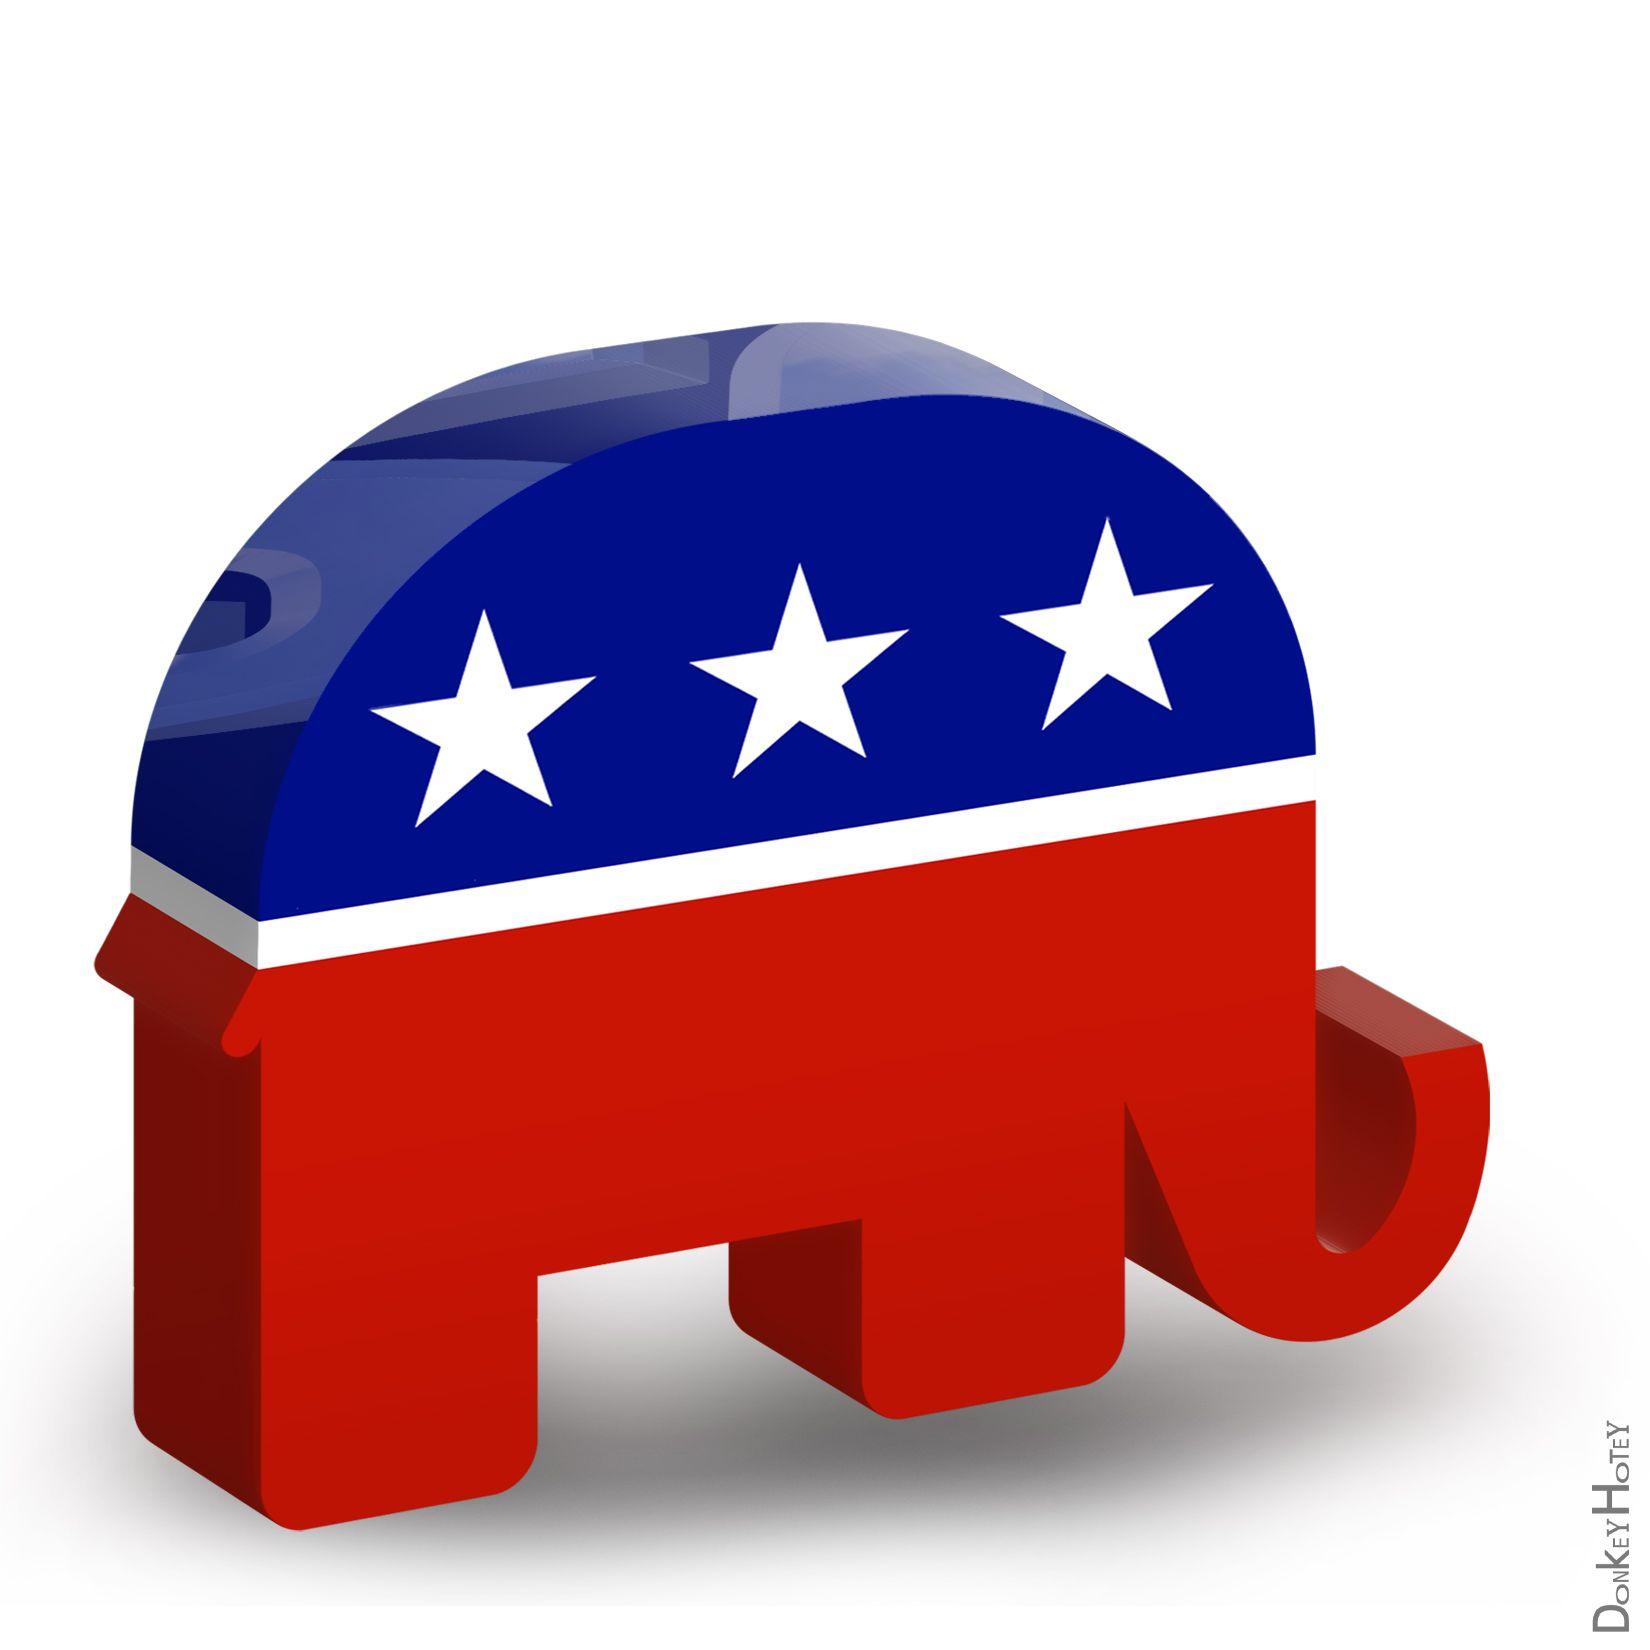 Republican Logo - GOP Republican logo